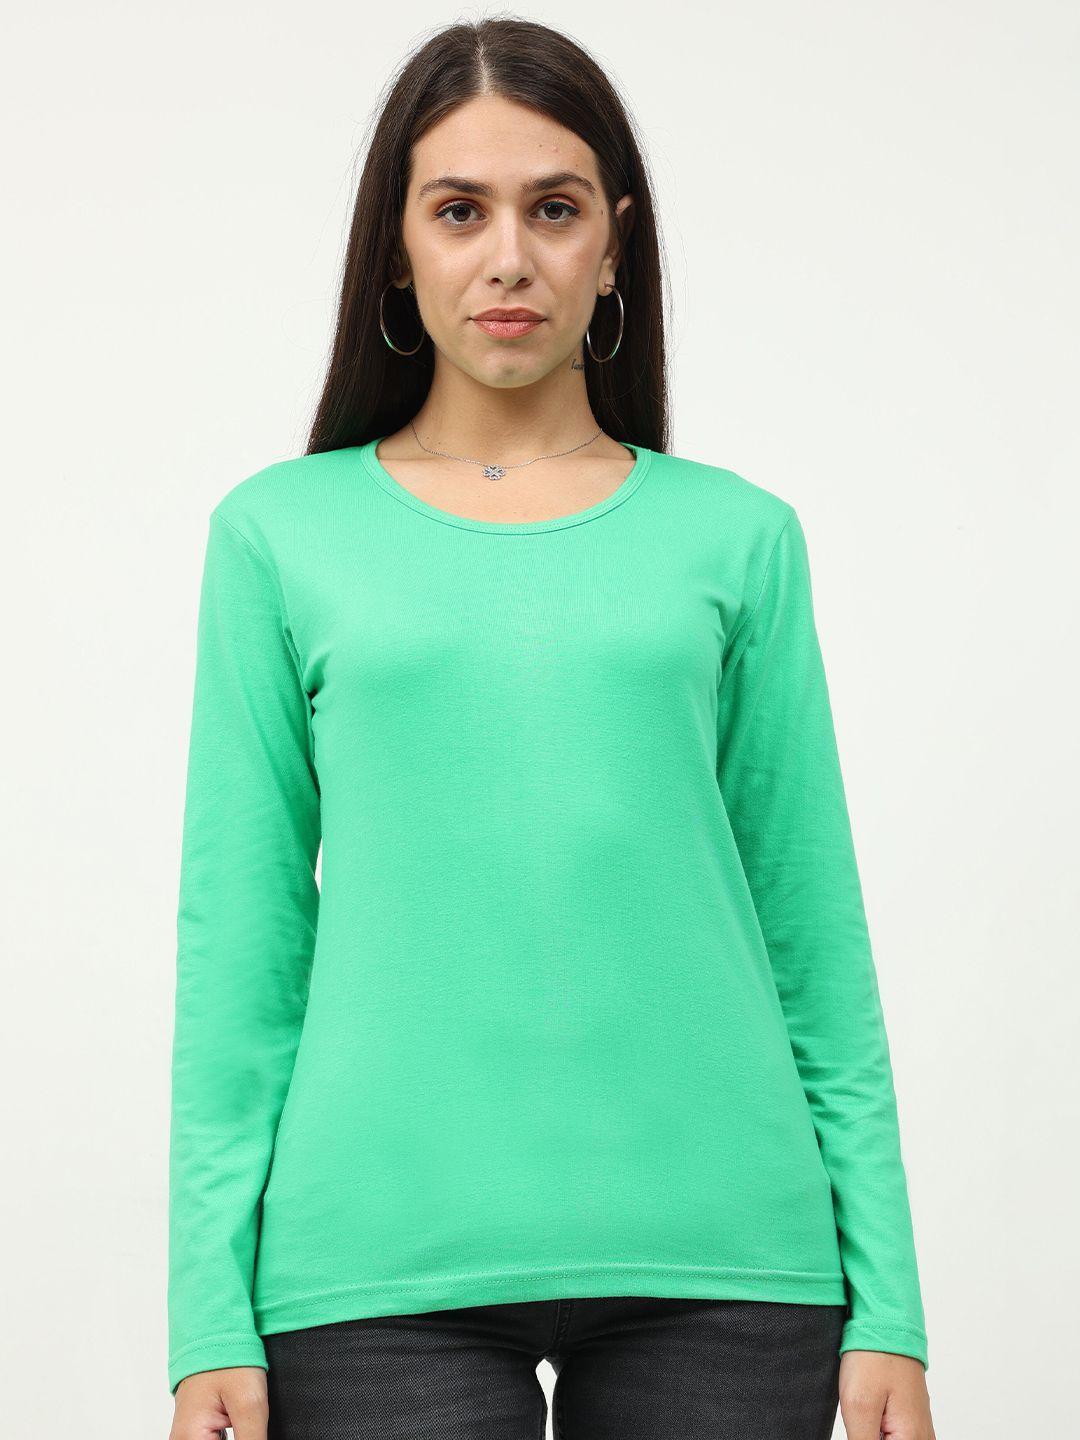 fleximaa-women-green-t-shirt